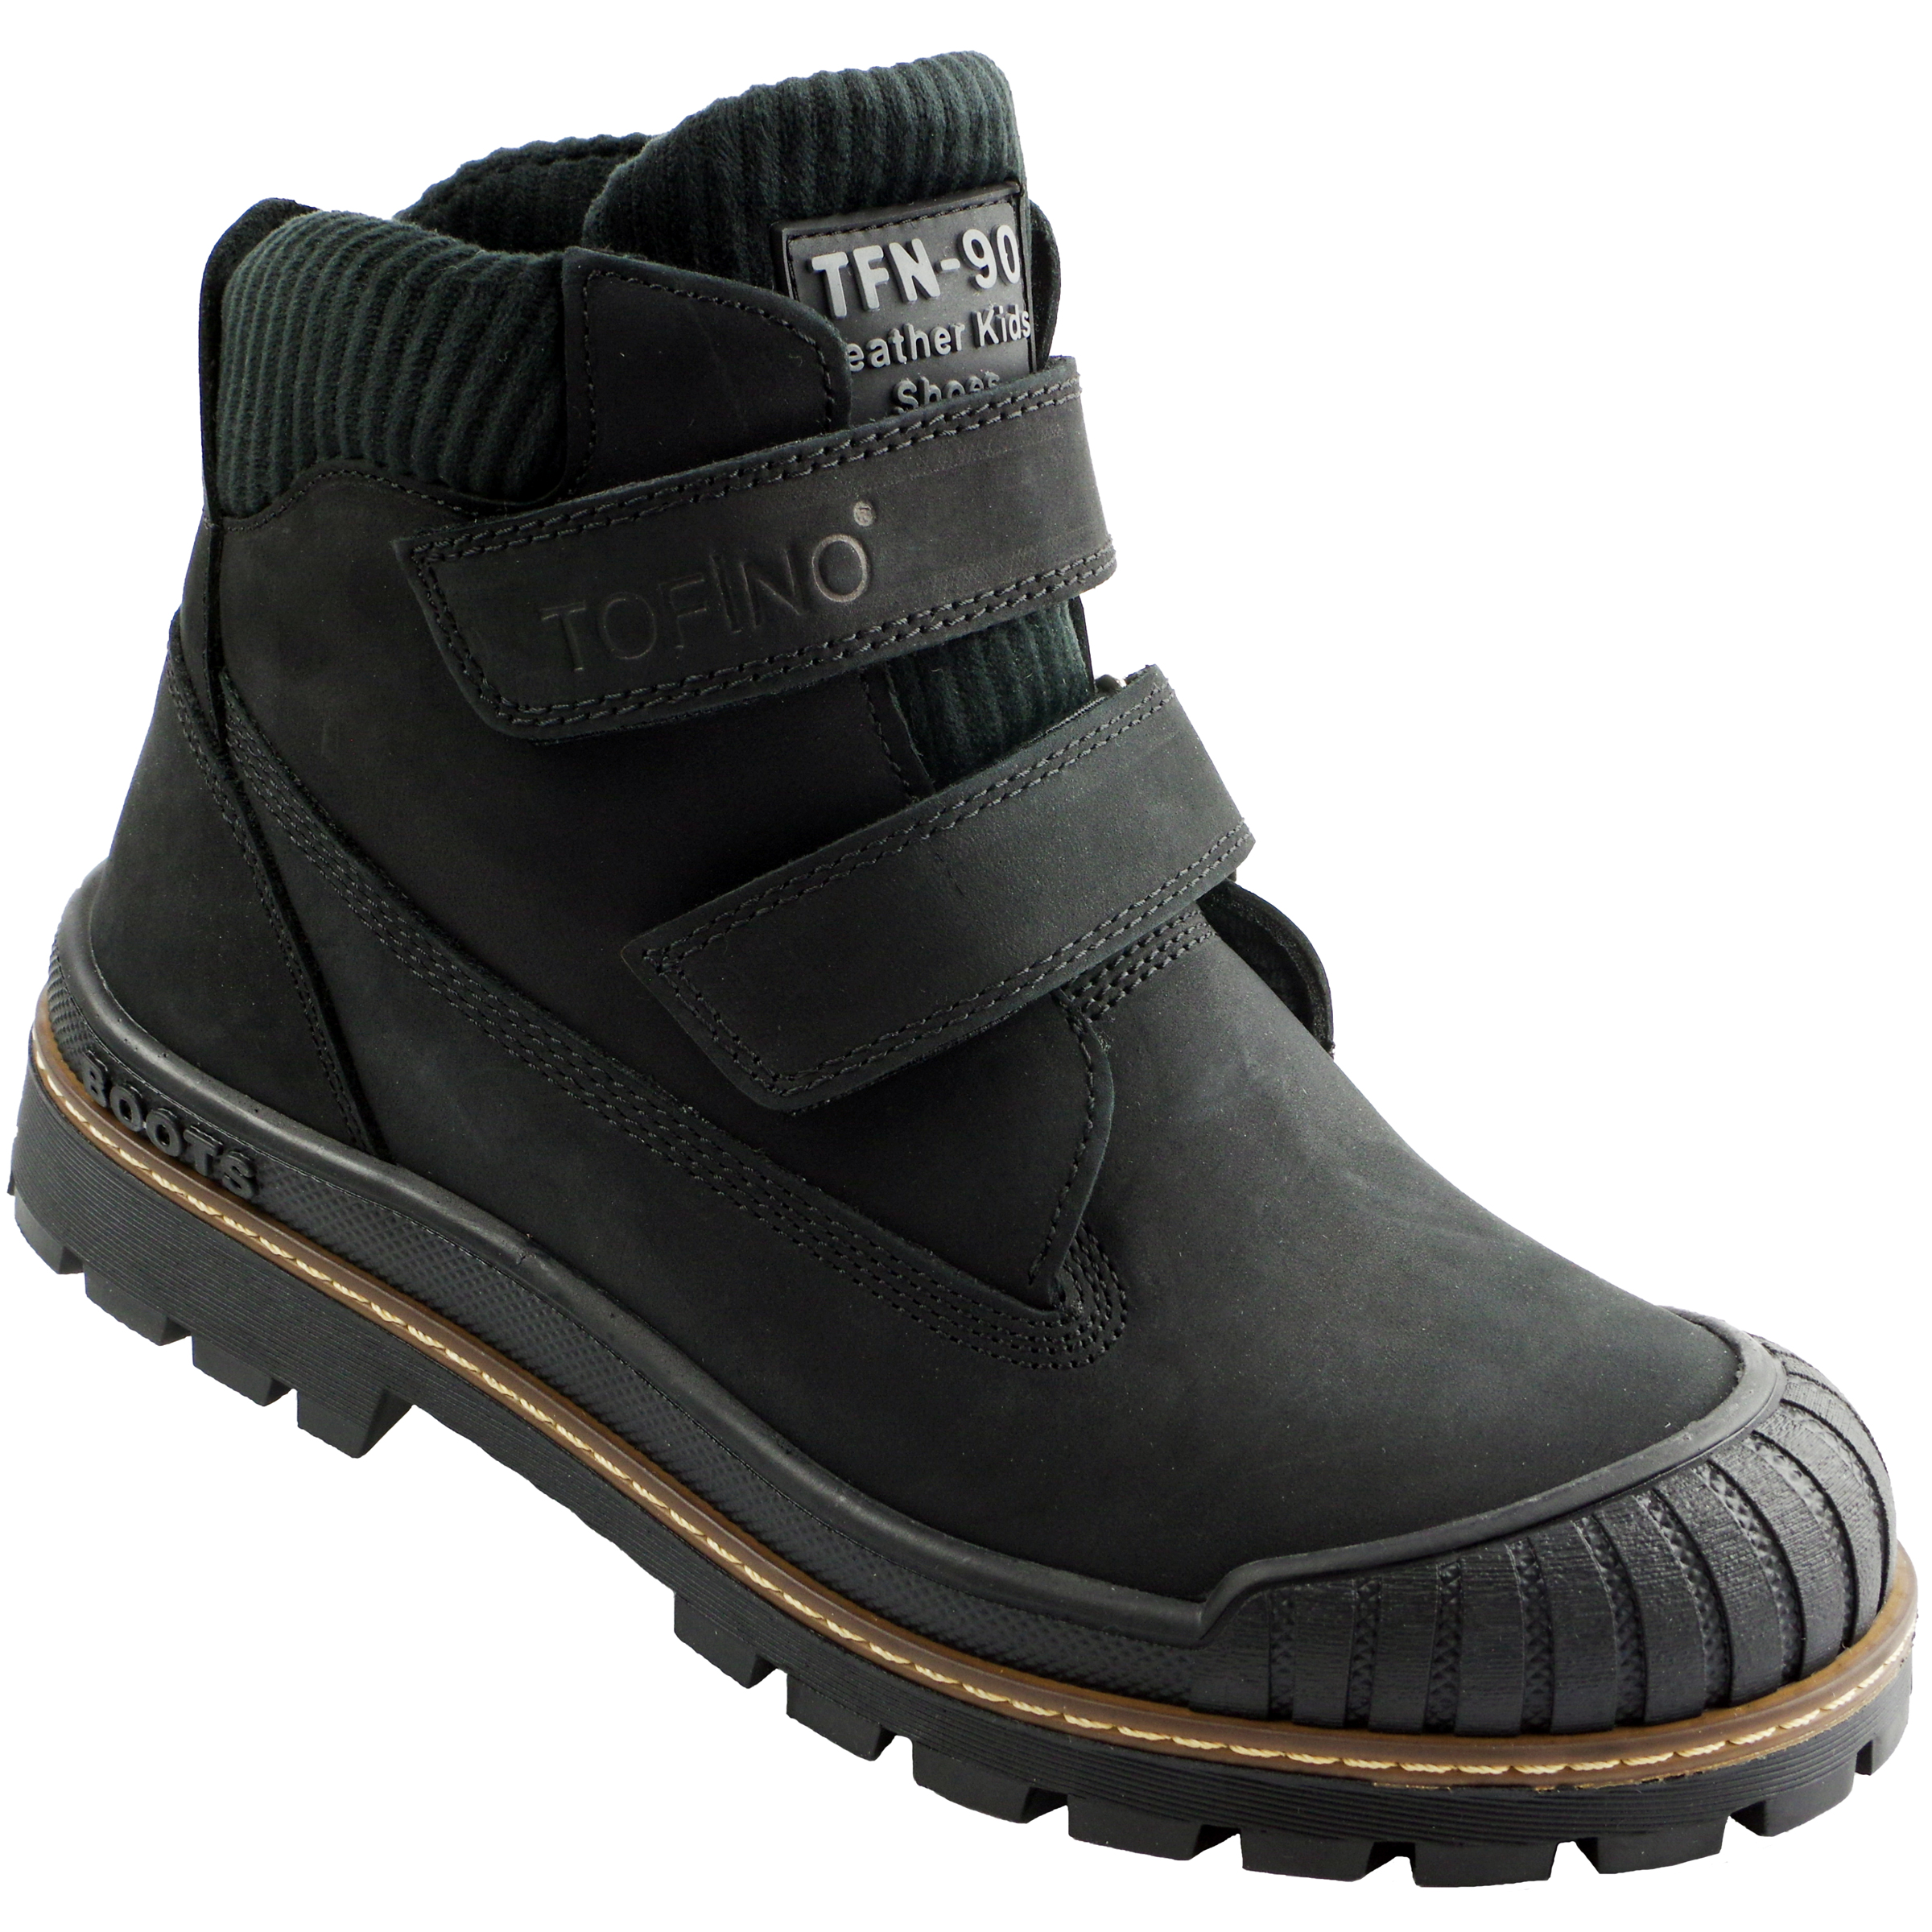 Ботинки подростковые (2142) материал Нубук, цвет Черный  для мальчиков 37-40 размеры – Sole Kids